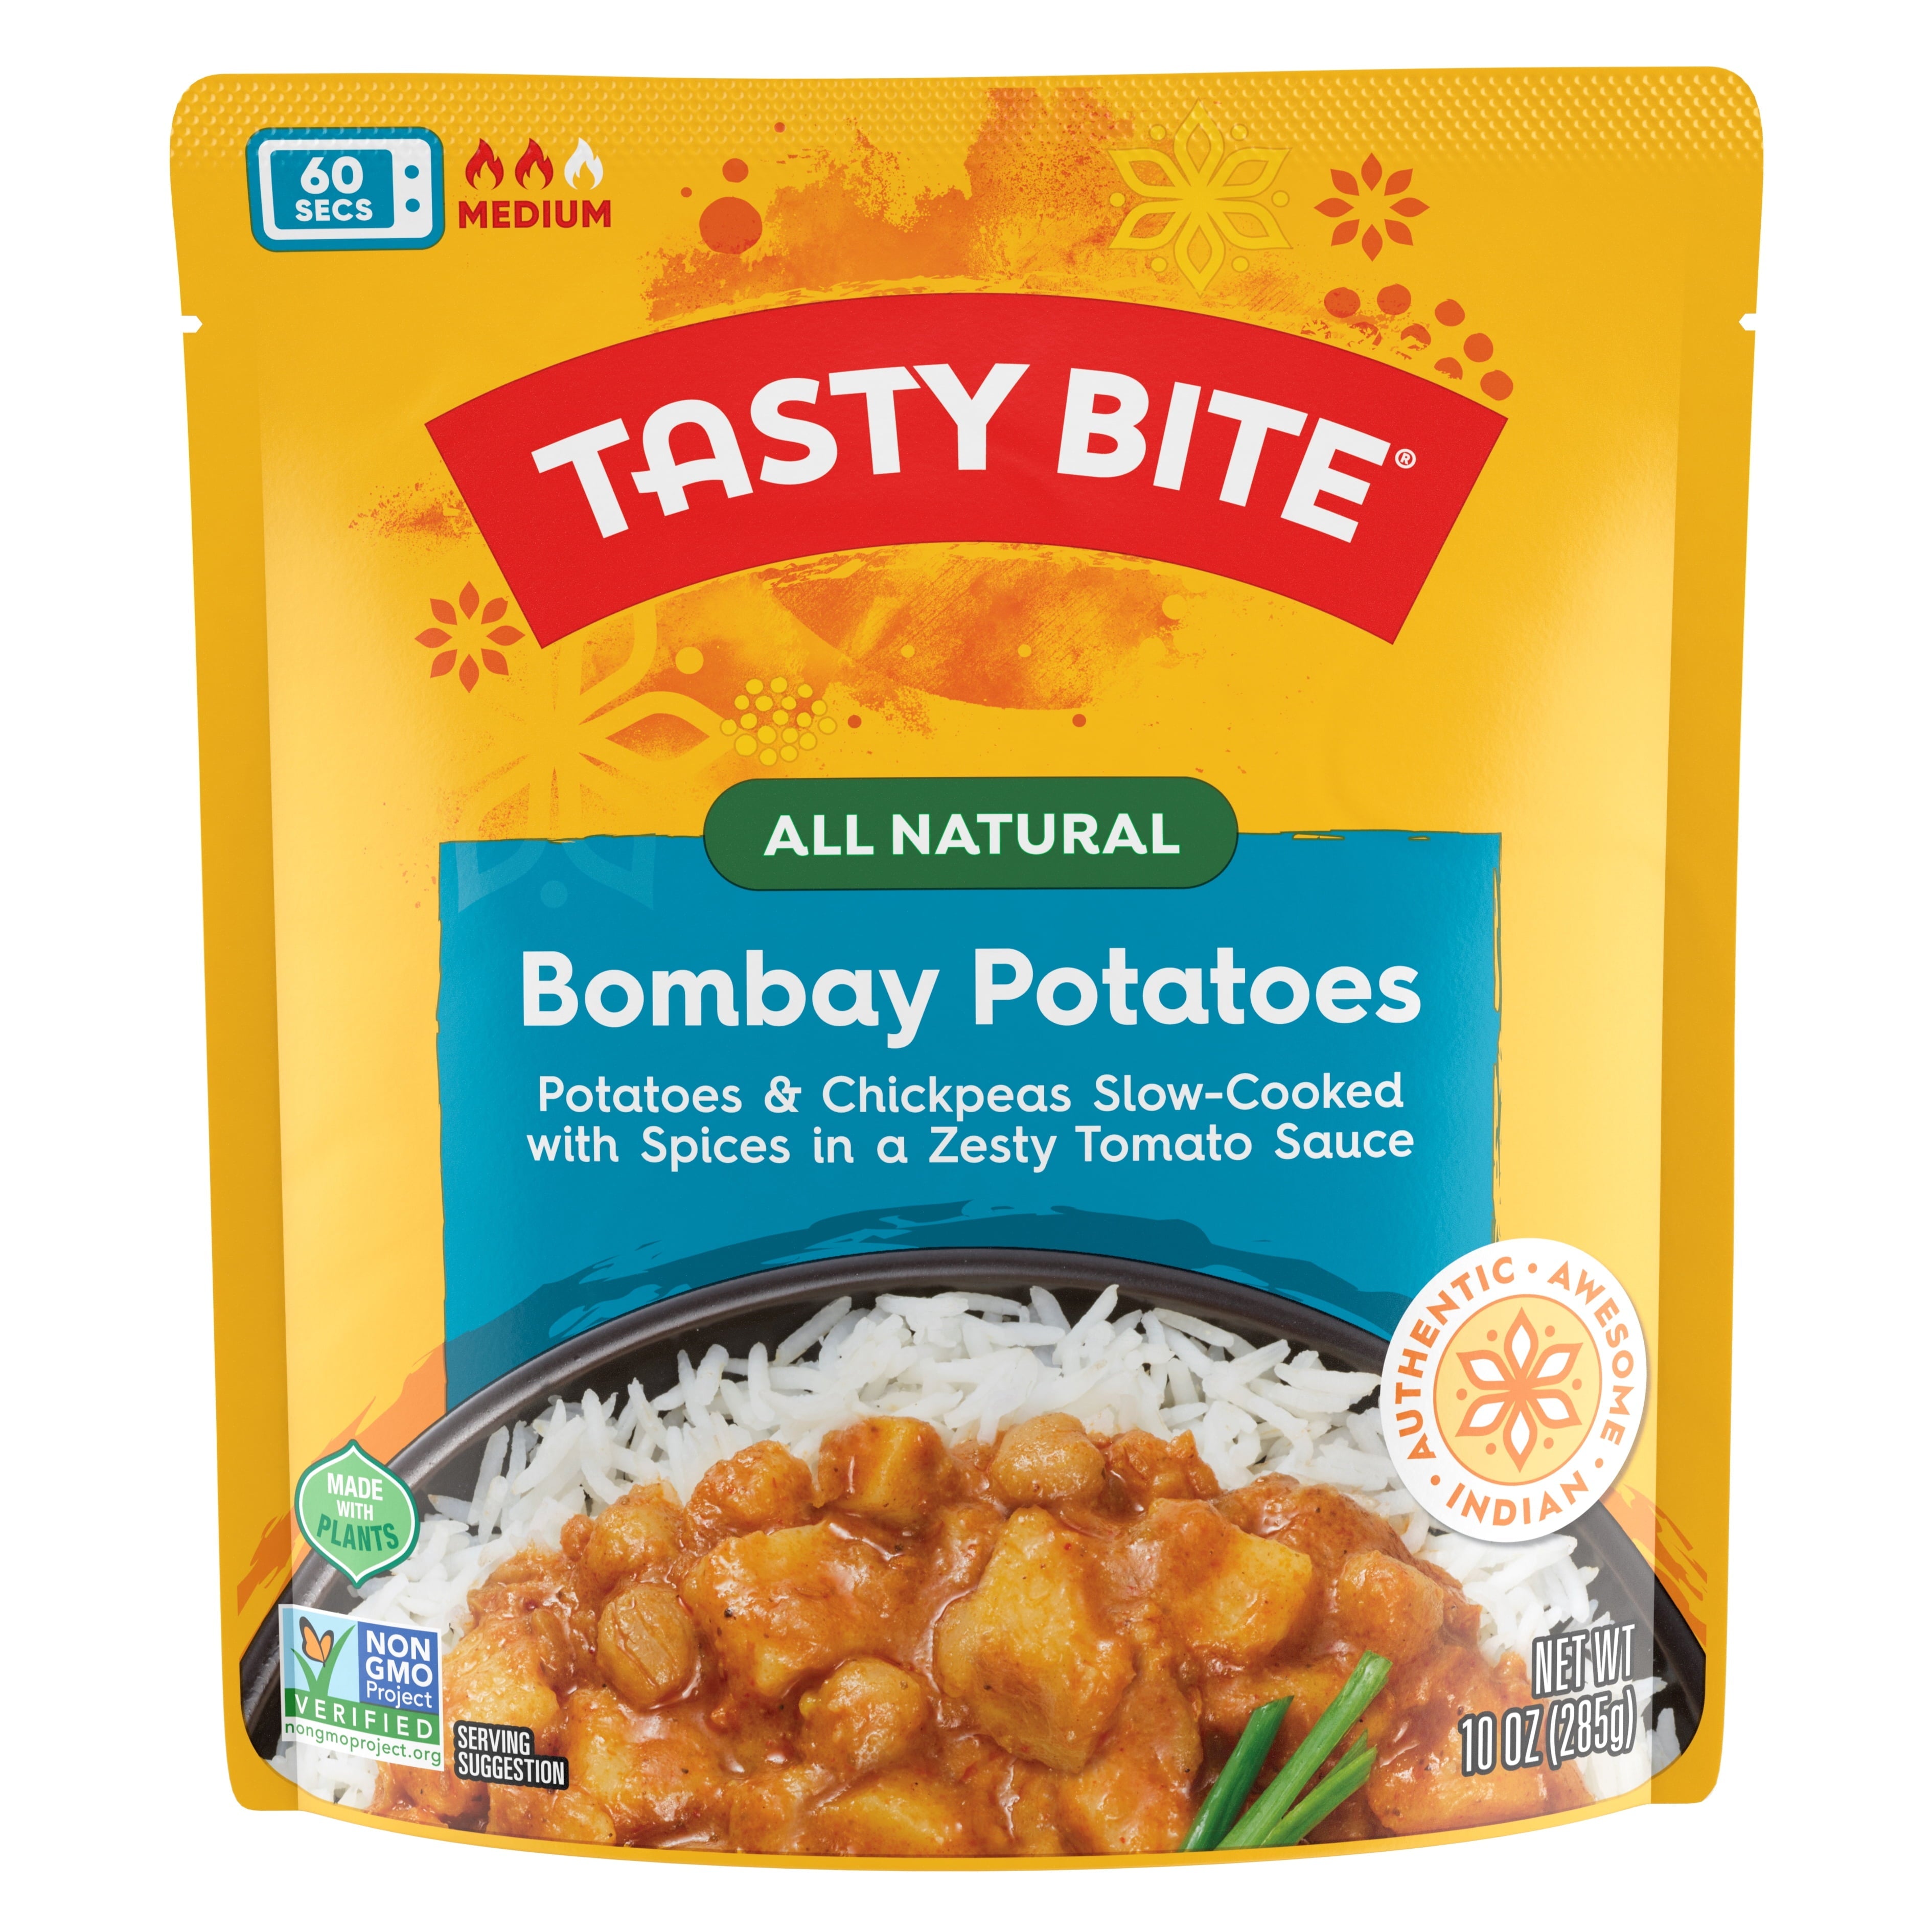 TASTY BITE Tasty Bite Indian Bombay Potatoes